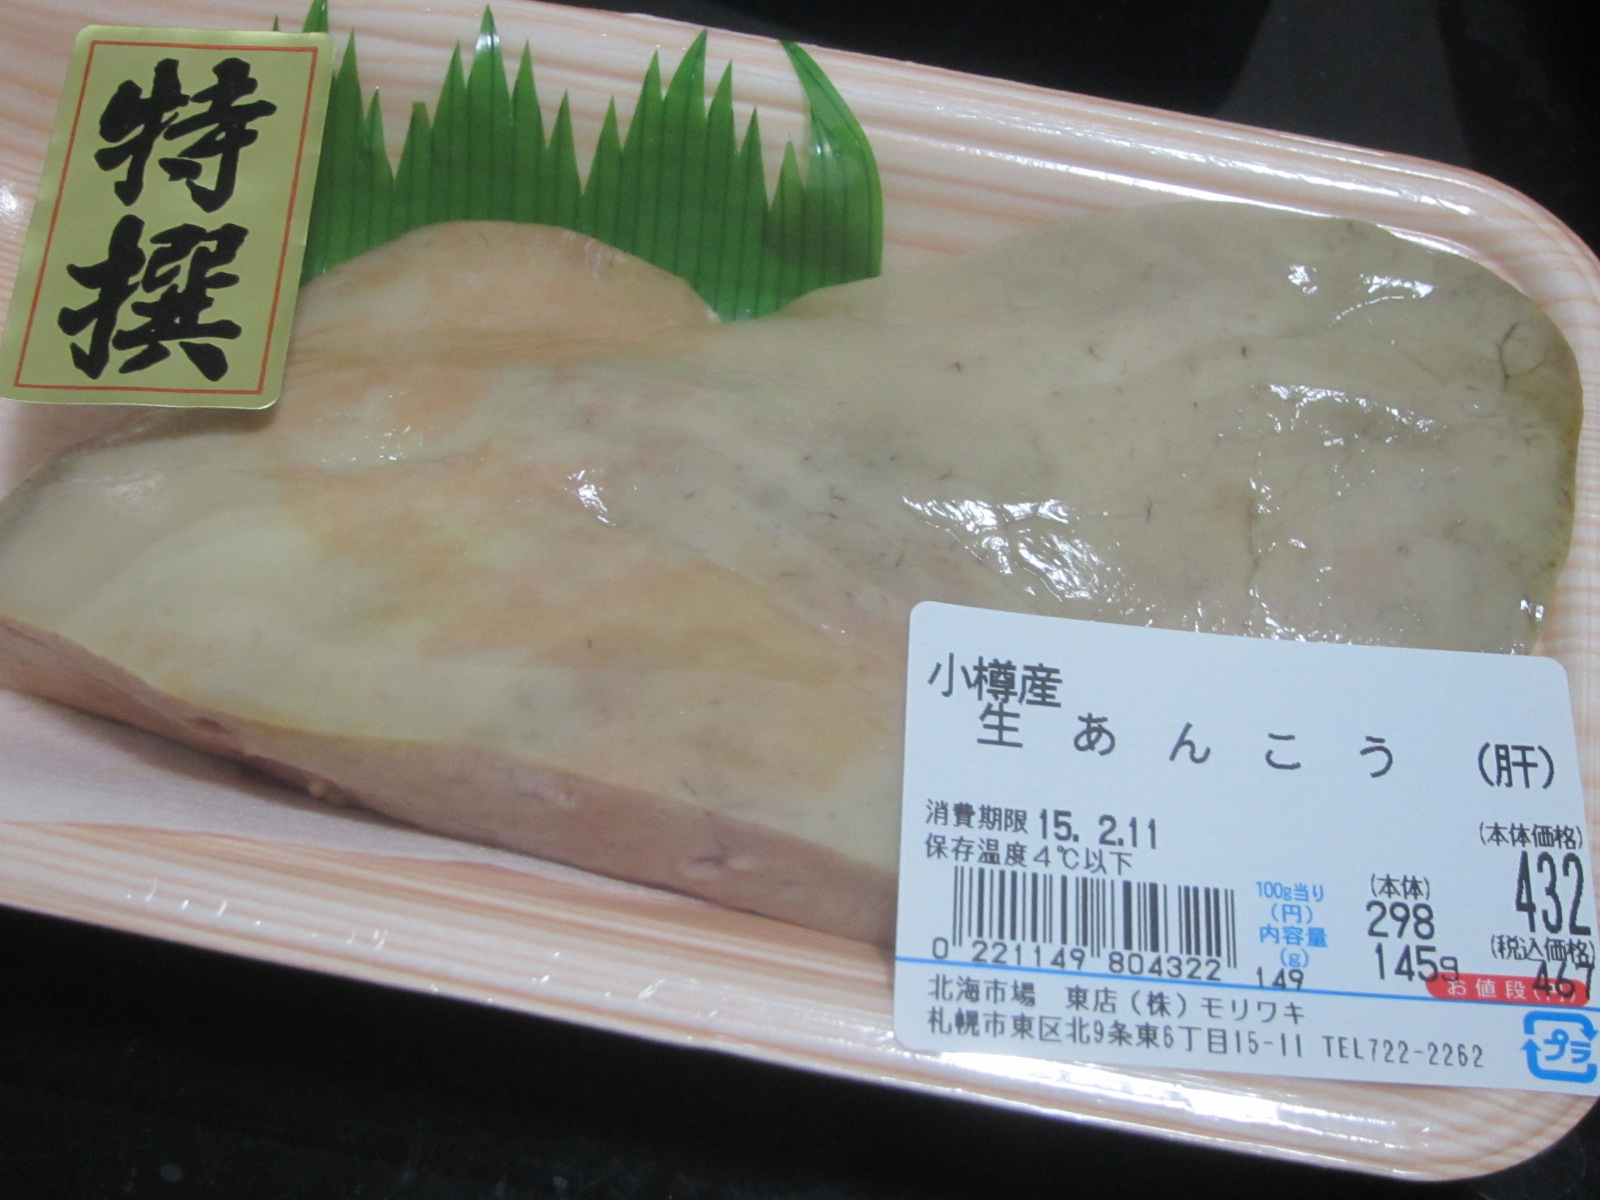 生アンコウの肝を買ってきてアン肝作ってみるよ 北海道の食事ブログ